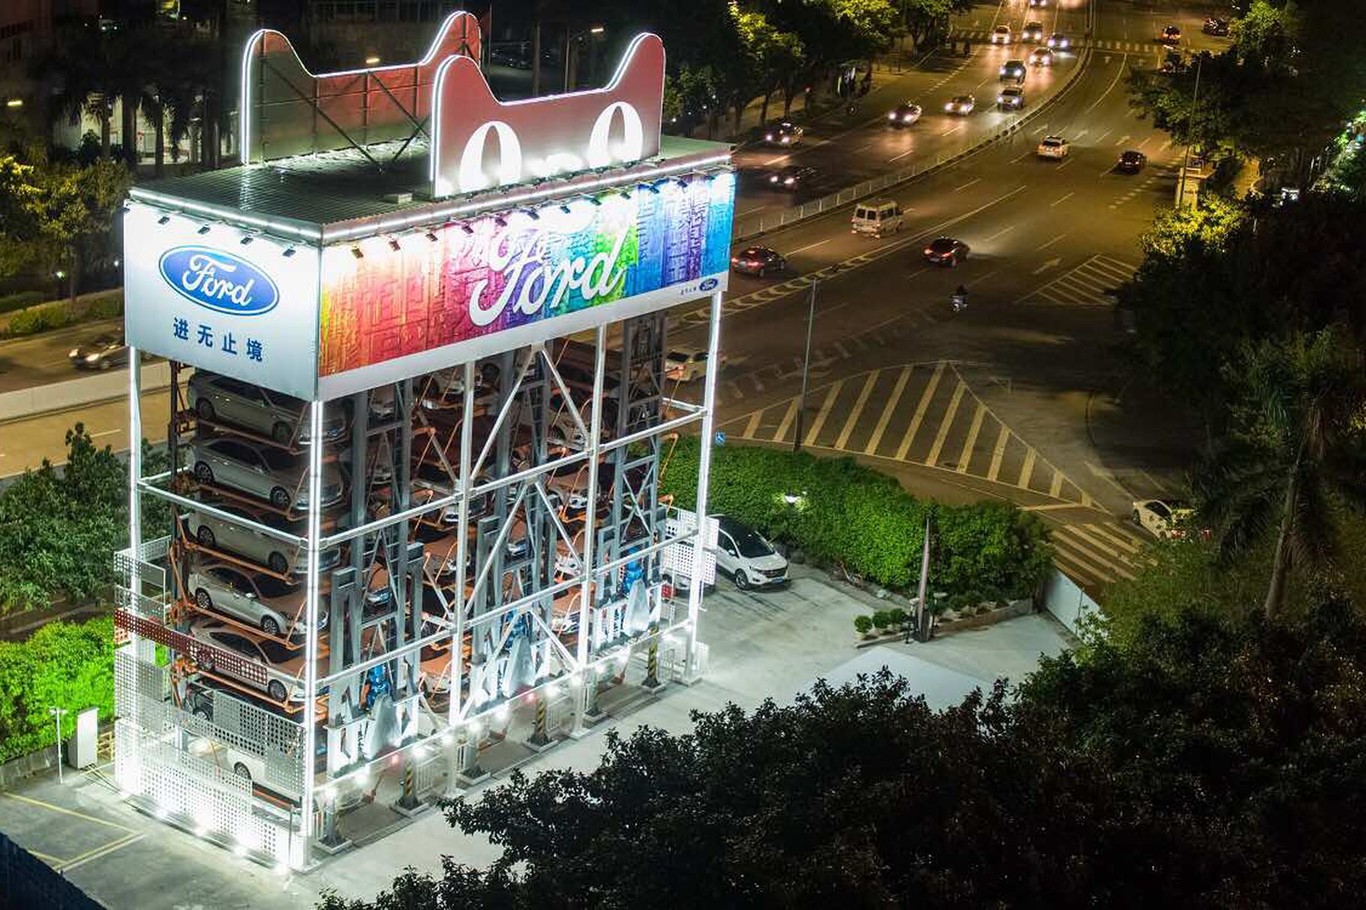 Crean máquina expendedora de autos en China